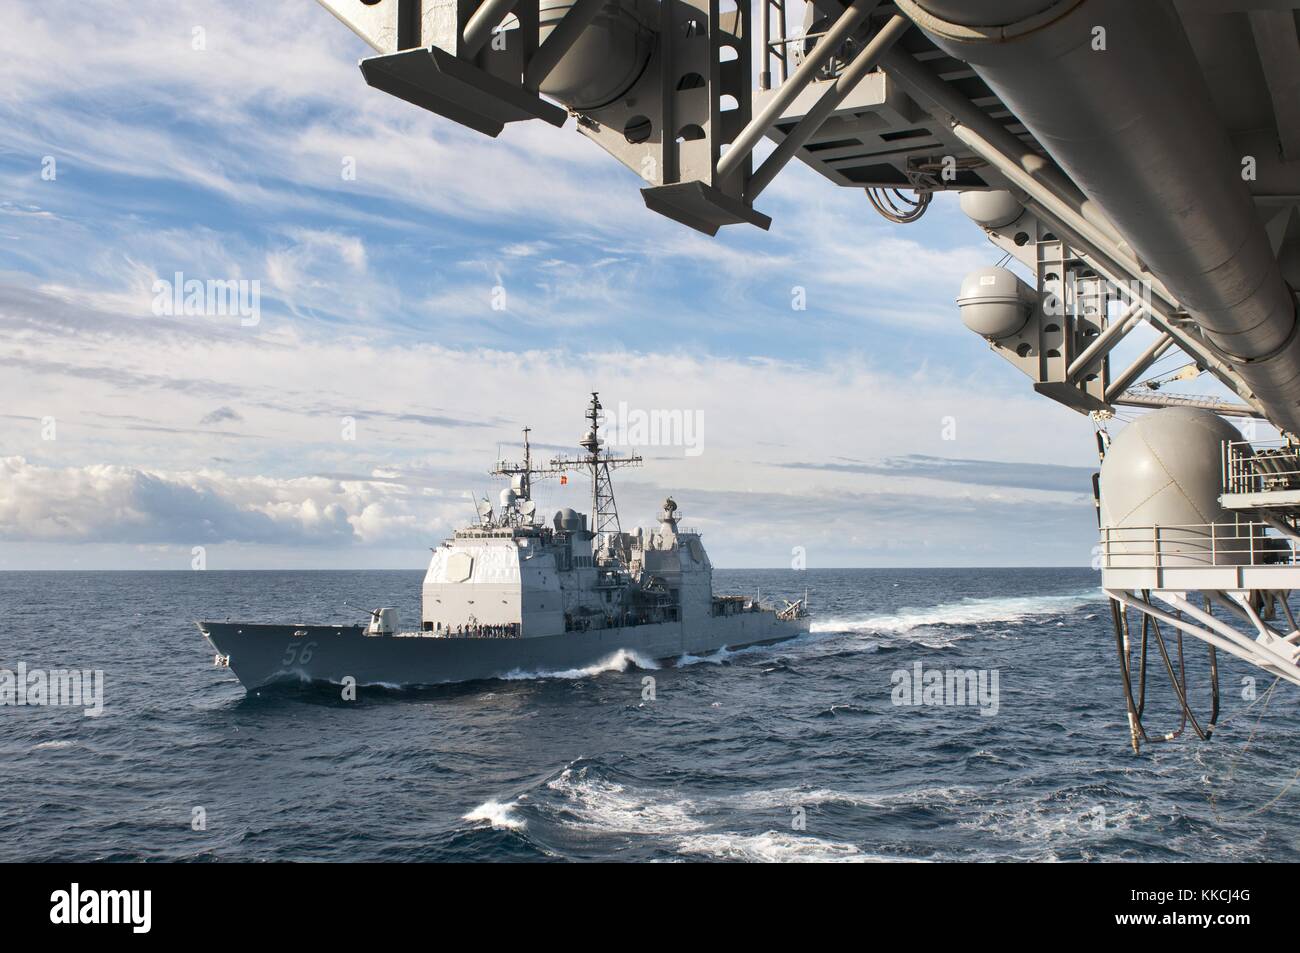 Il guidato-missili cruiser USS San Jacinto cg 56 si avvicina all'assalto anfibio nave USS kearsarge lhd 3 per un rifornimento di carburante in mare oceano atlantico. Immagine cortesia la comunicazione di massa specialist 1a classe tommy lamkin/us navy, 2012. Foto Stock